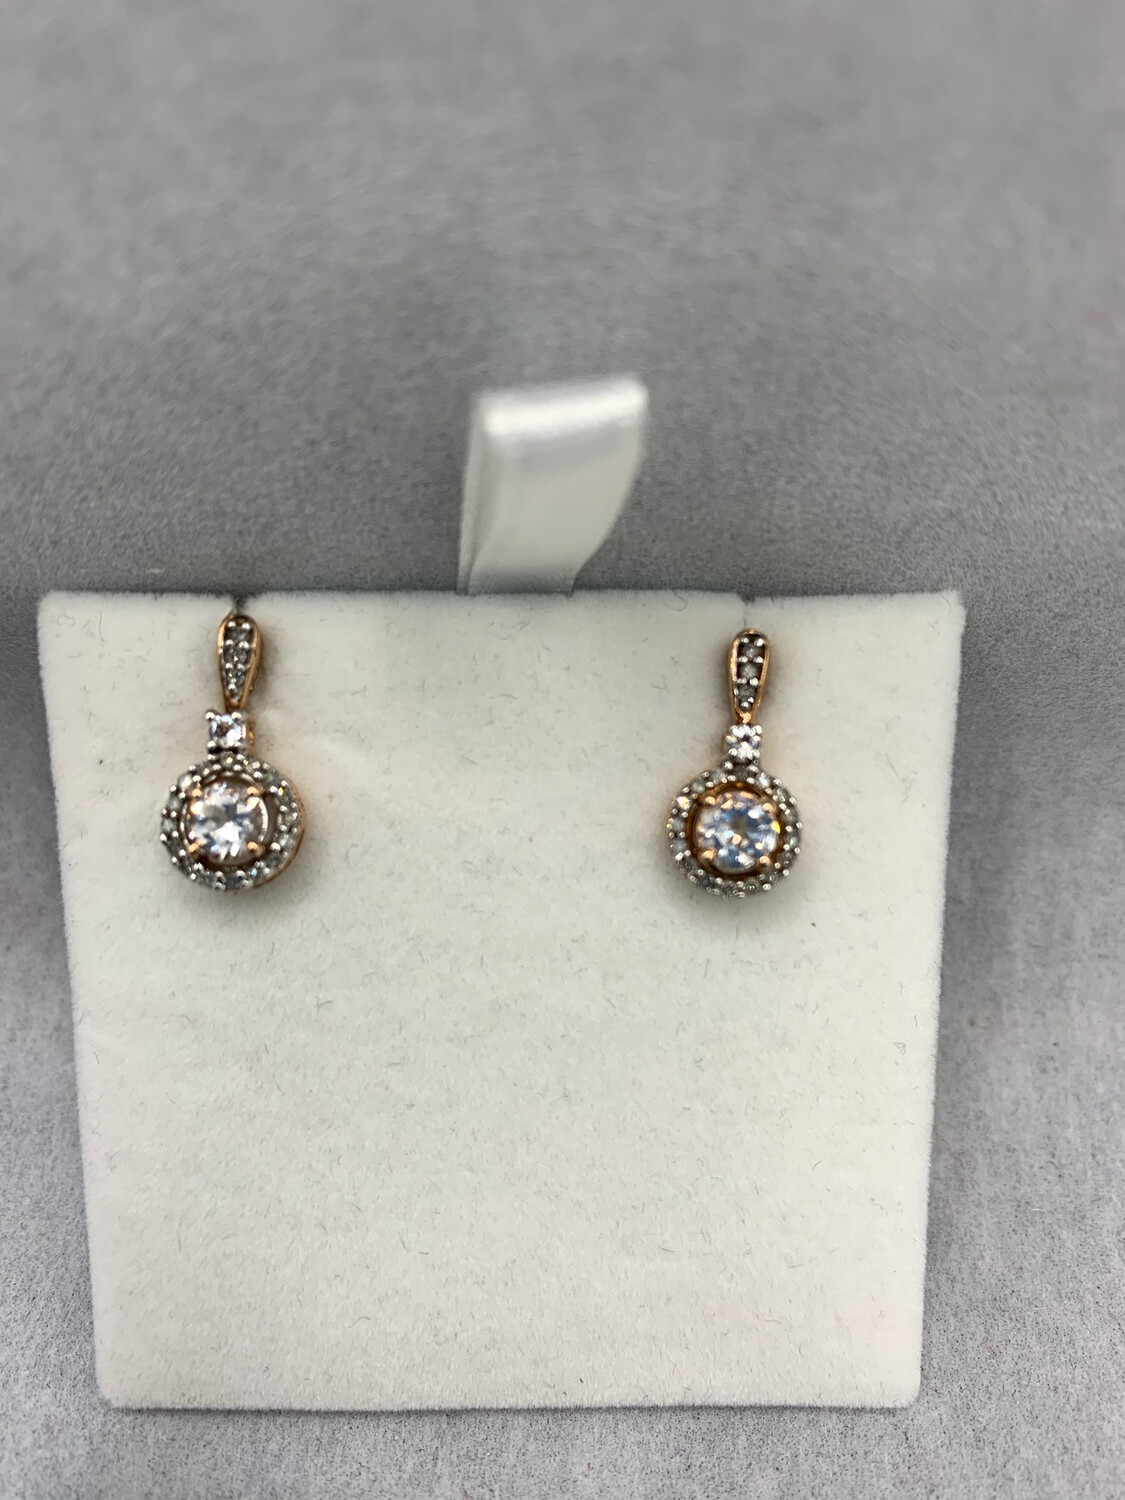 Rose Gold Morganite And Diamond Earrings